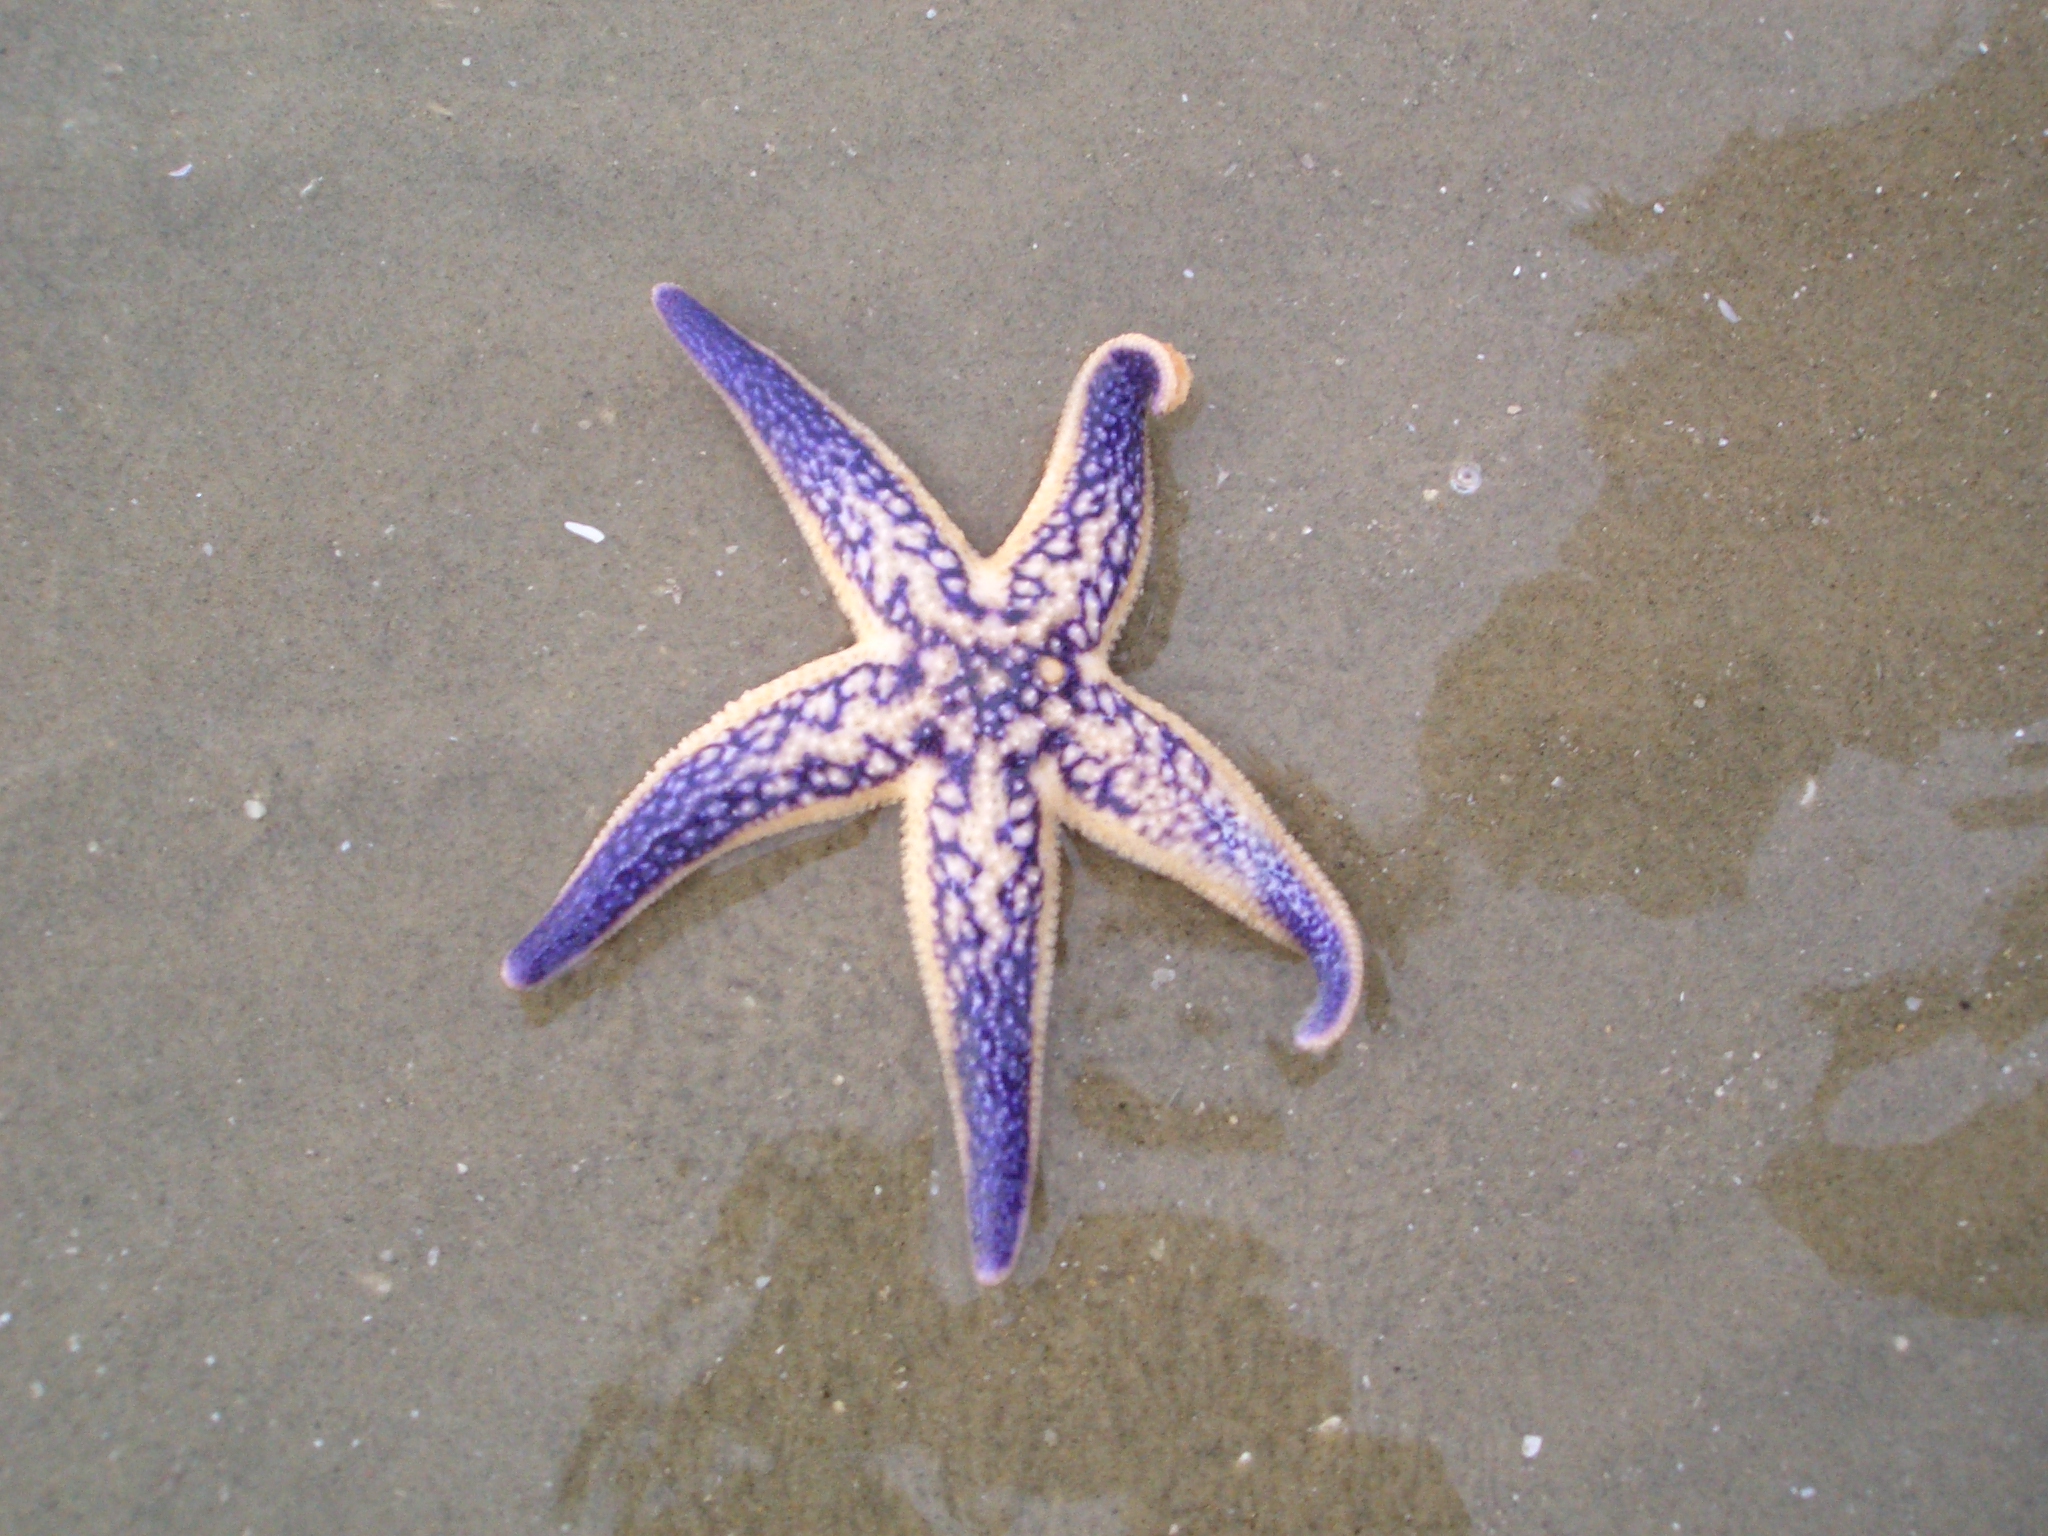 Фото Морской Звезды В Море